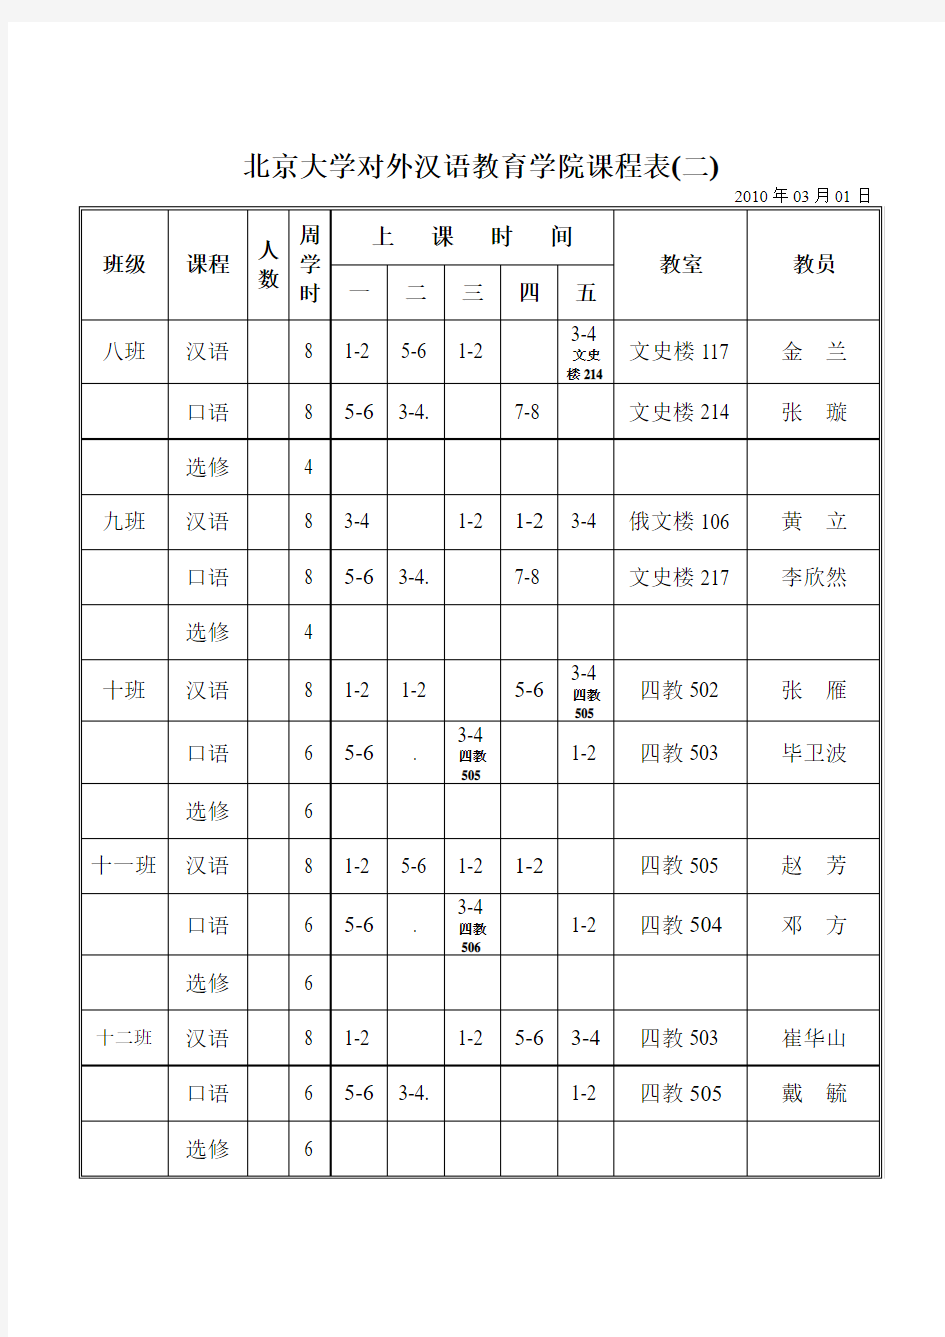 北京大学对外汉语教育学院课程表(一)